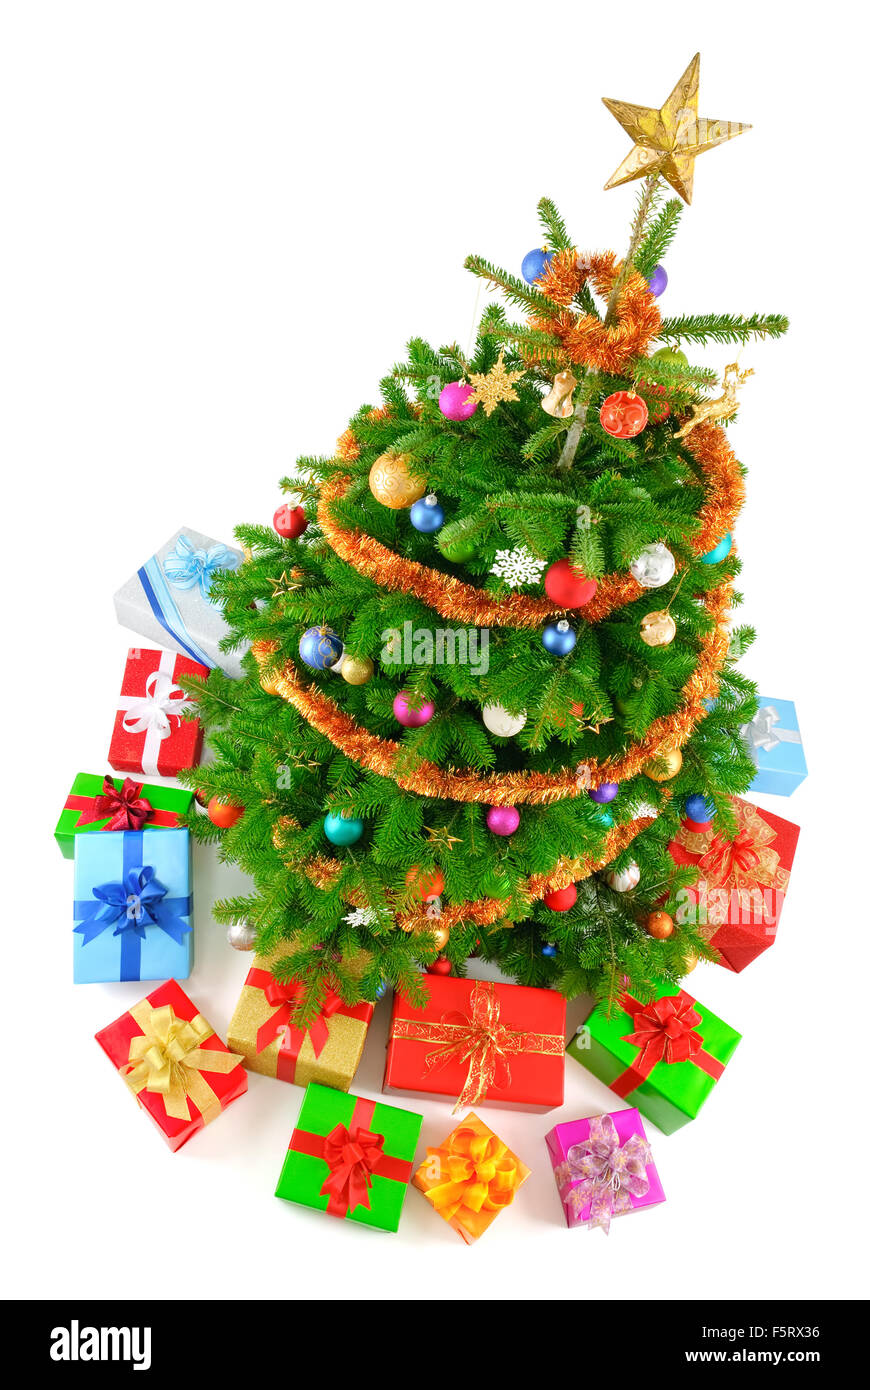 Vue de dessus de isolé un arbre de Noël très coloré avec des cadeaux Banque D'Images